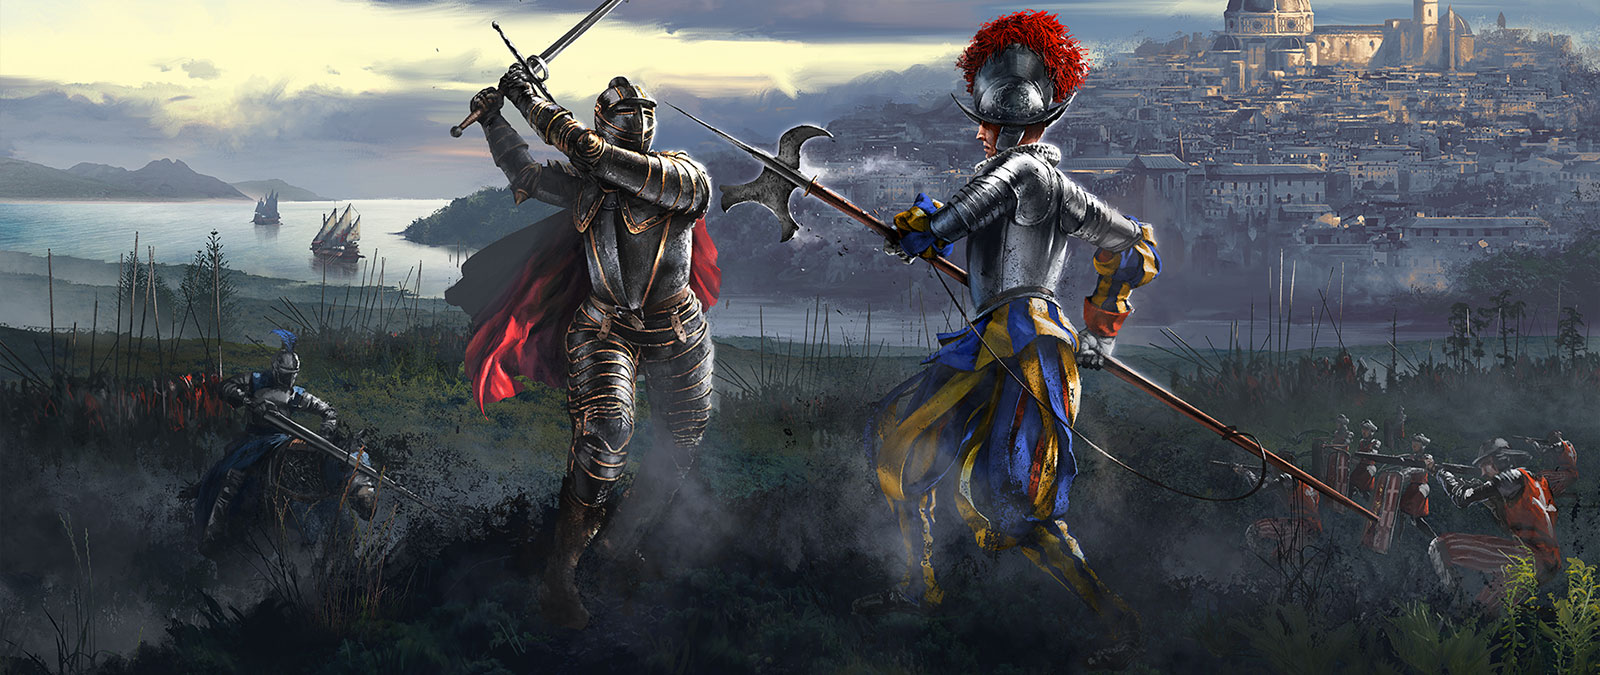 Deux chevaliers s’affrontent alors que leurs armées se préparent au combat.